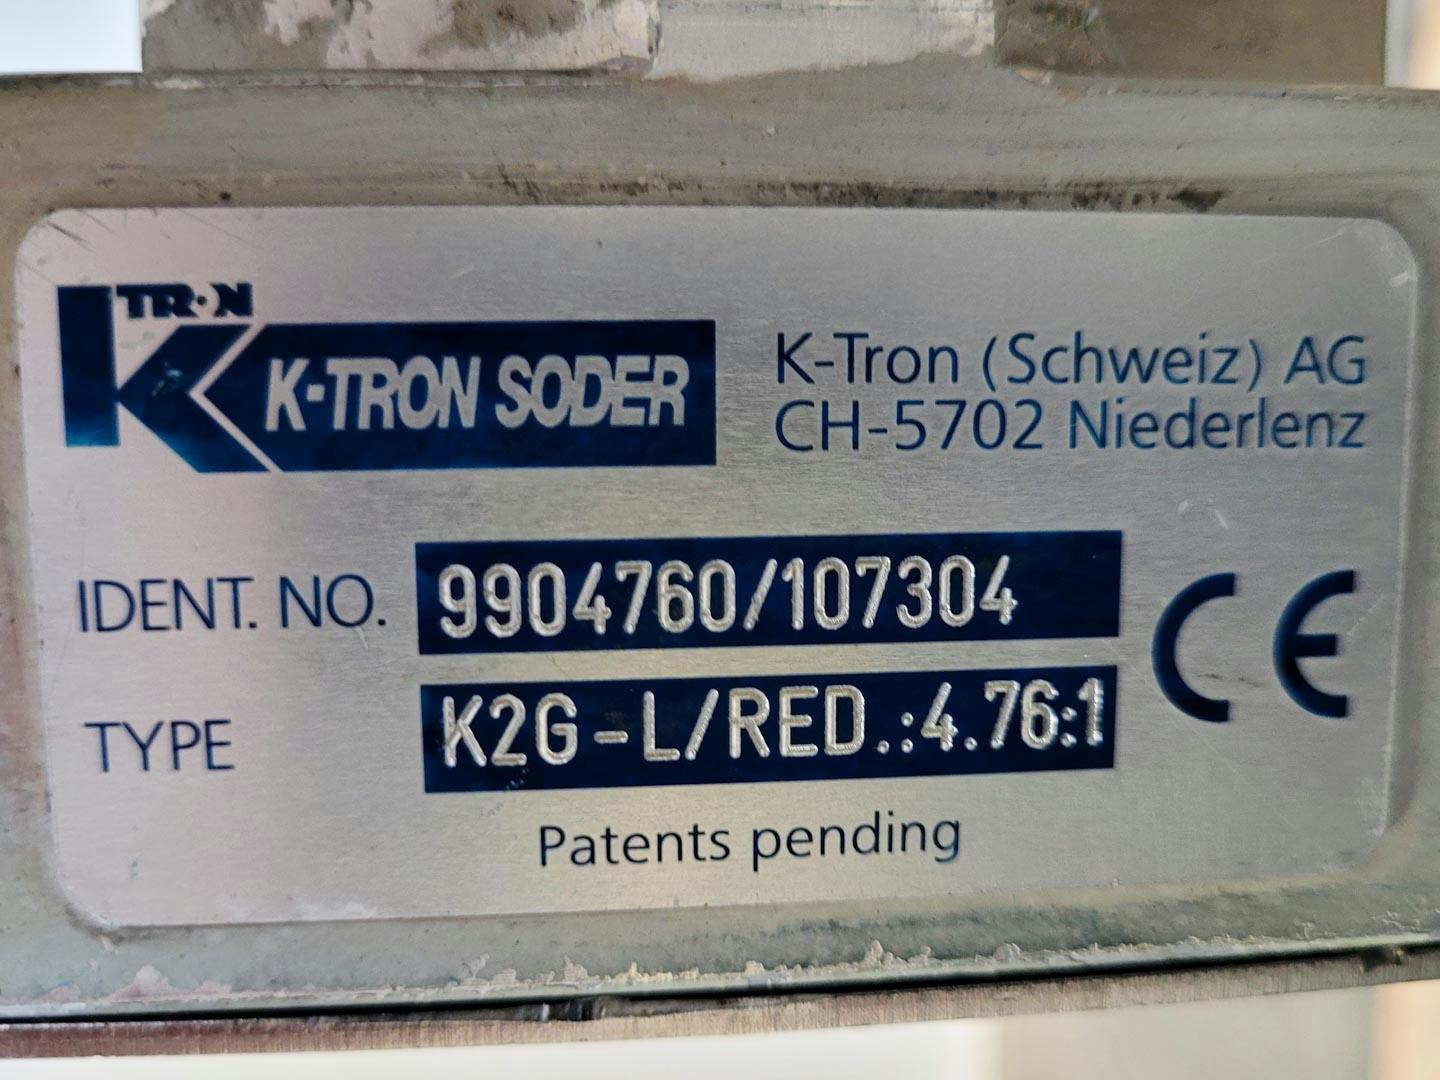 K-tron K2G-L/RED.:4.76:1 - Tornillo dosificador - image 10